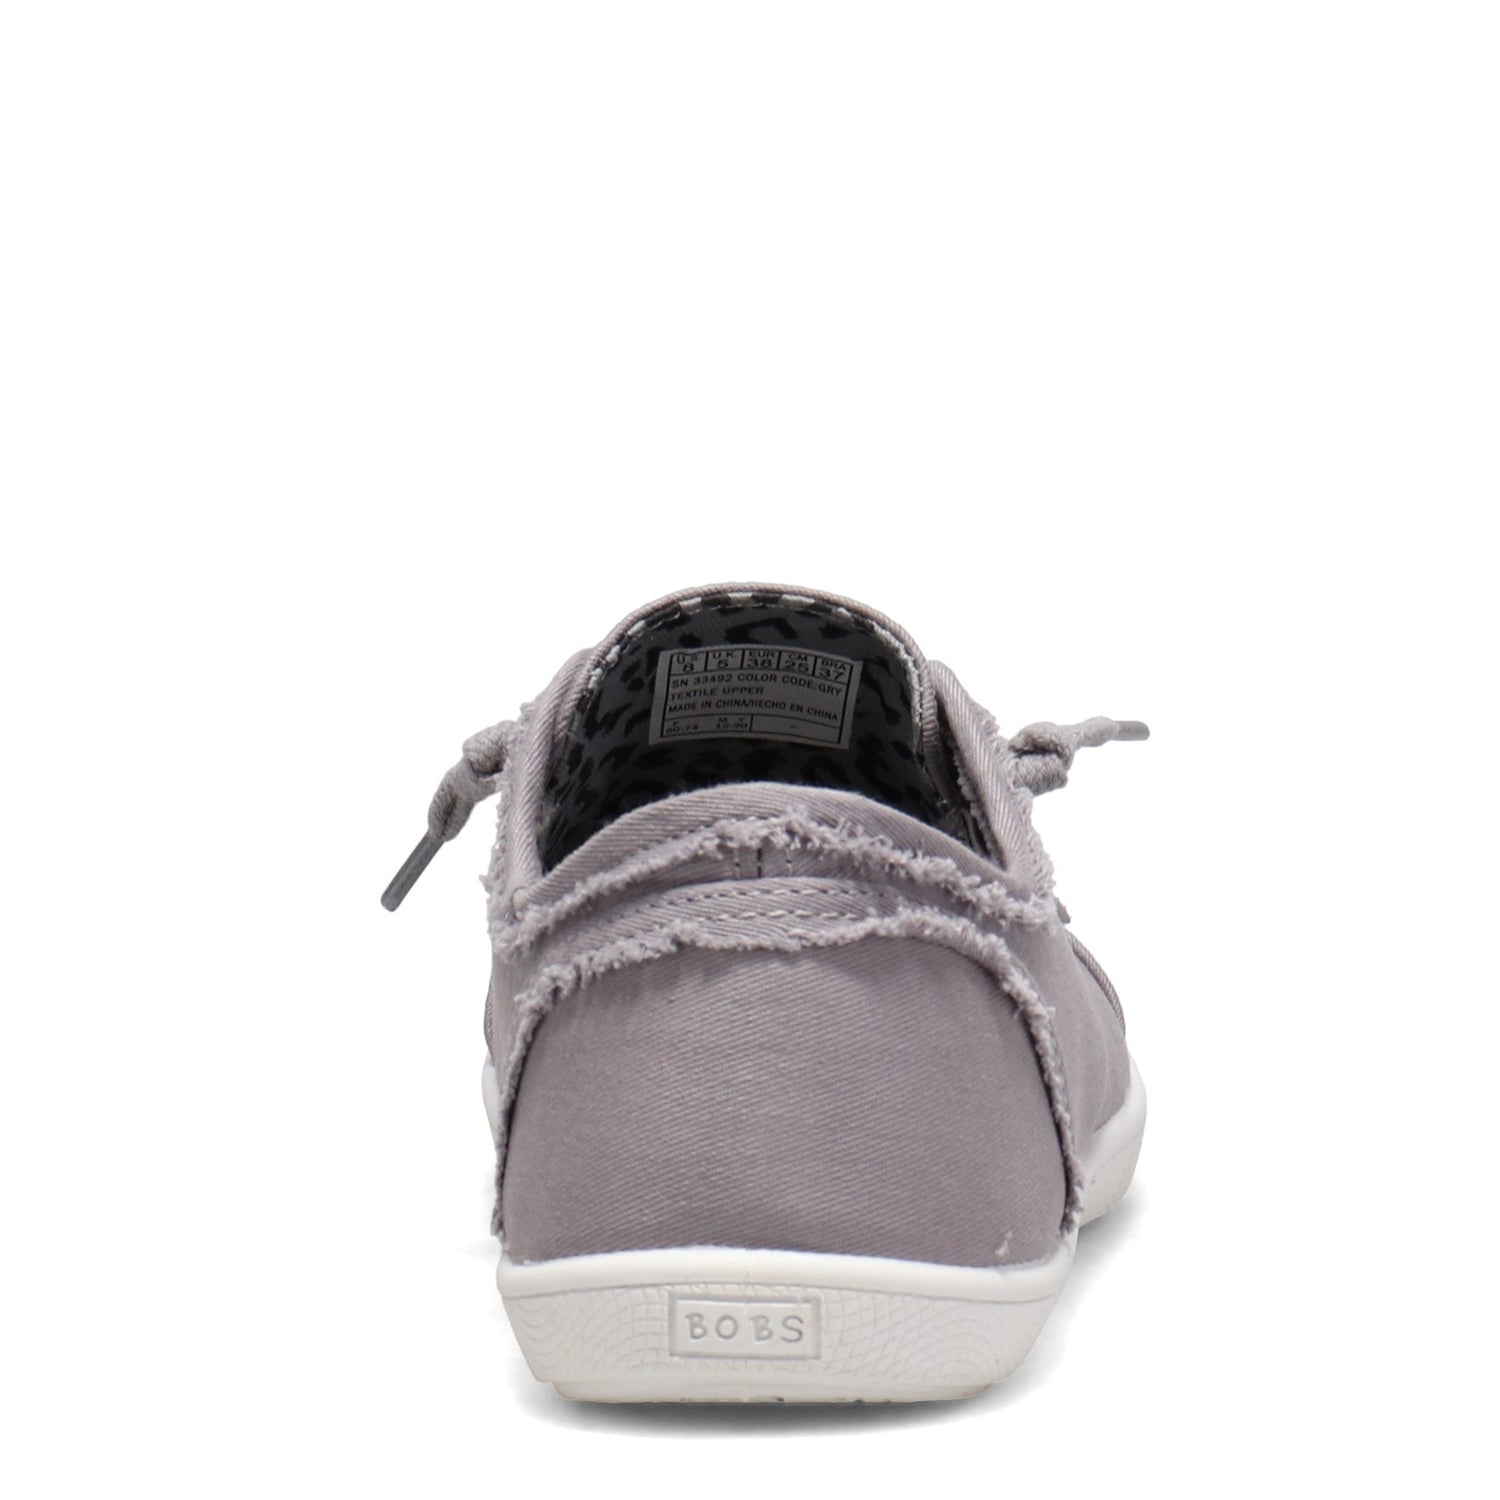 Peltz Shoes  Women's Skechers BOBS B Cute Sneaker GRAY 33492-GRY